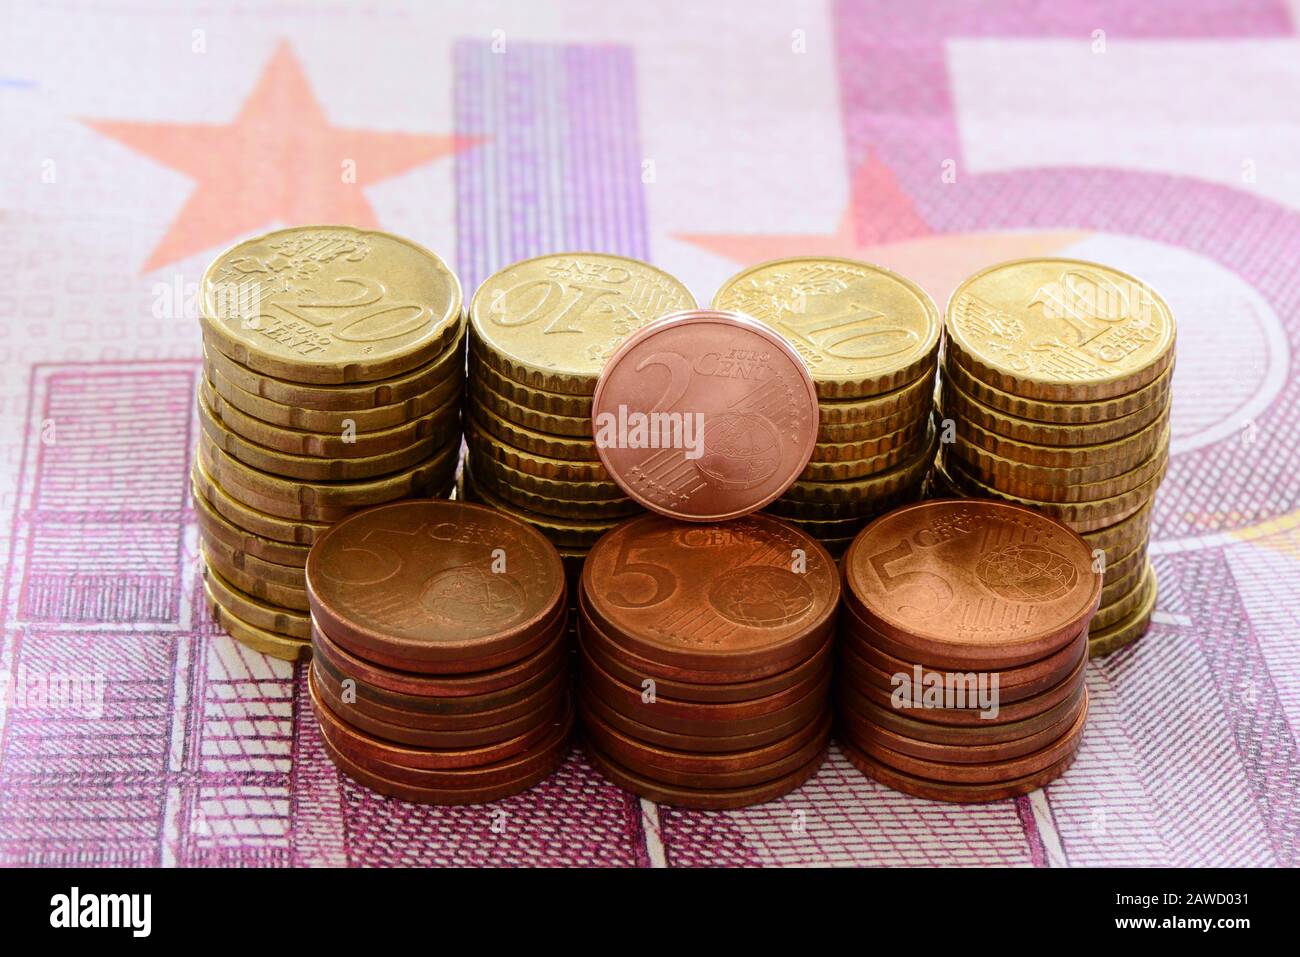 Secondo le relazioni dei media, la nuova Commissione europea prevede di abolire tutte le monete da 1 e 2 centesimi. Foto Stock